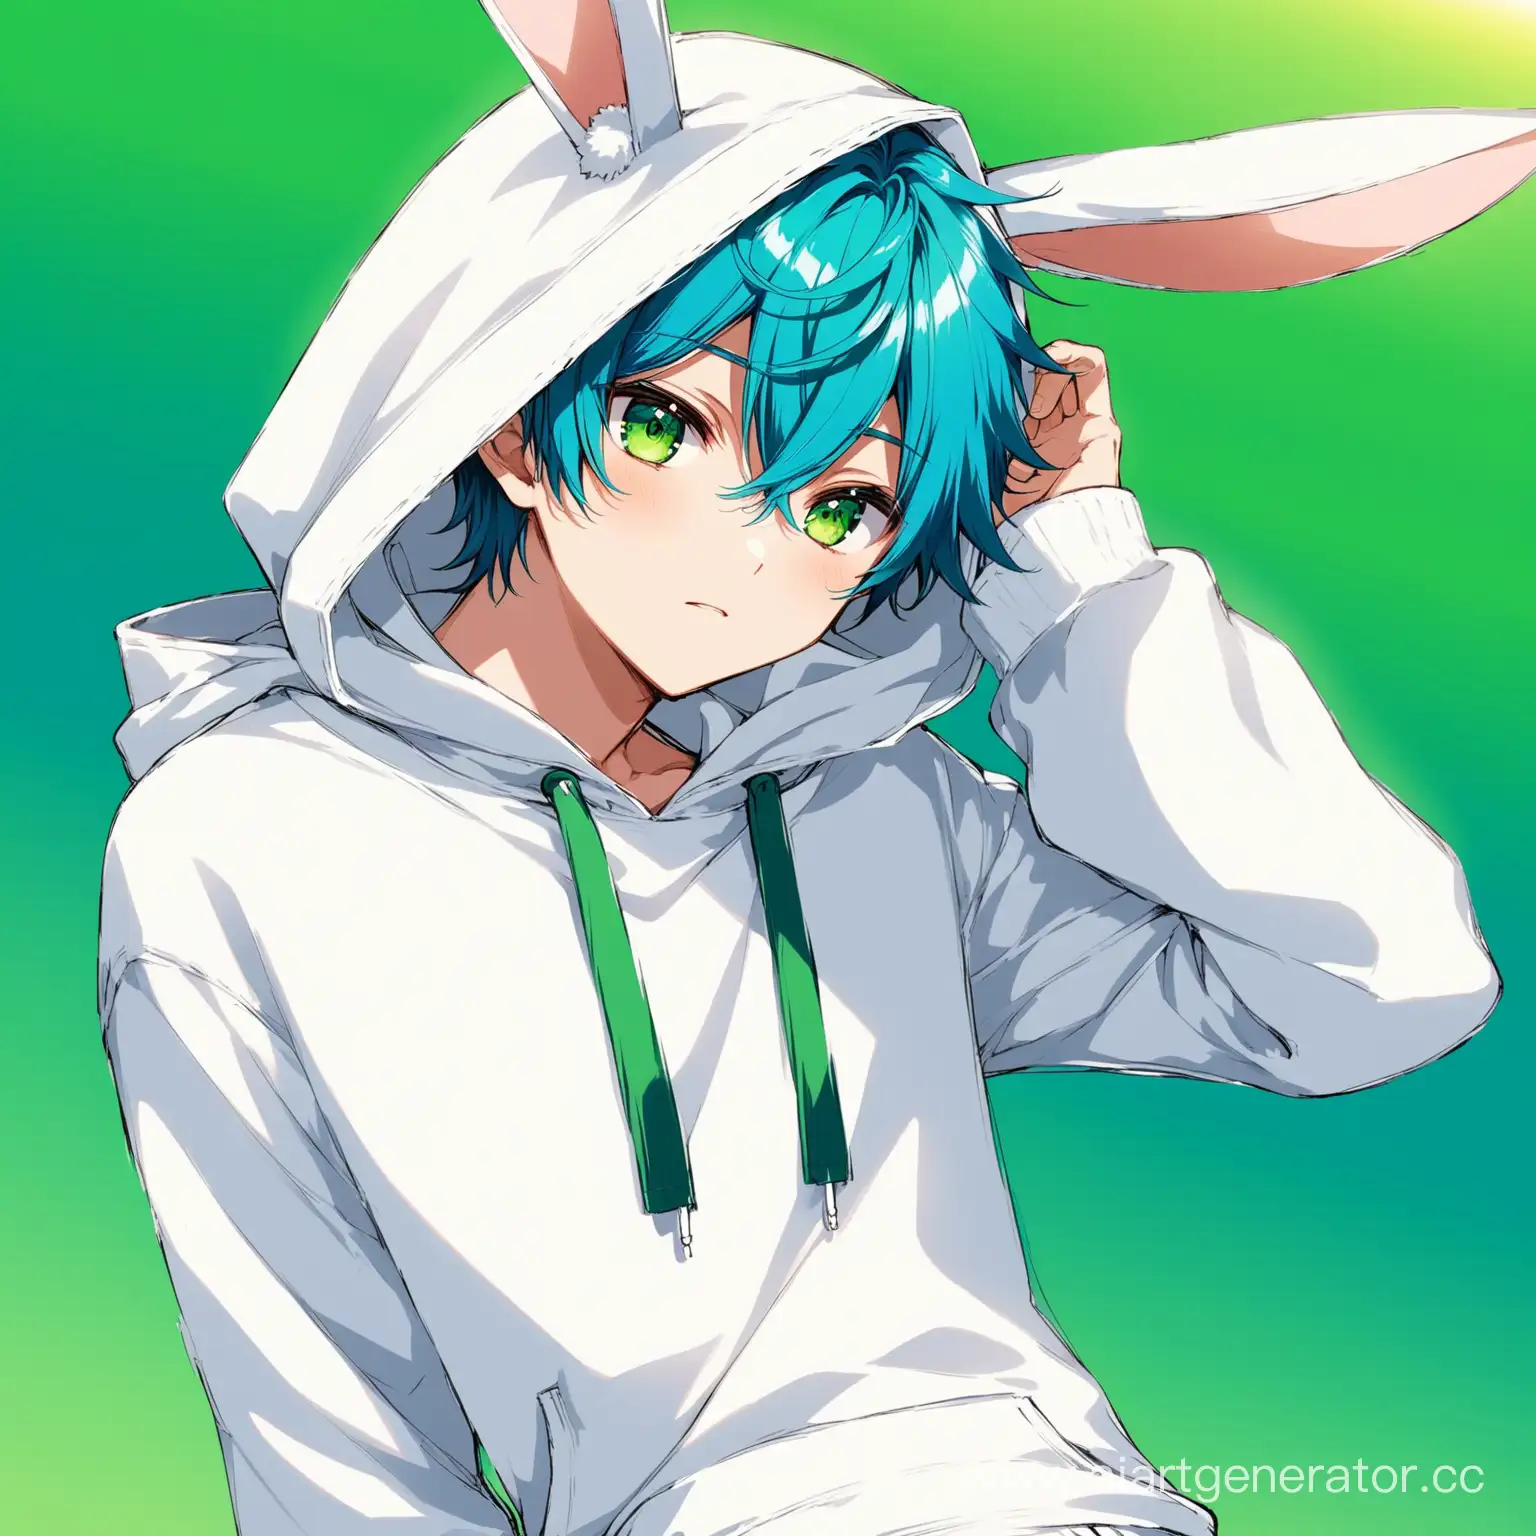 Аниме пацан с голубыми волосами и зелёными глазами в белой толстовке и белых штанах с капюшоном зайца